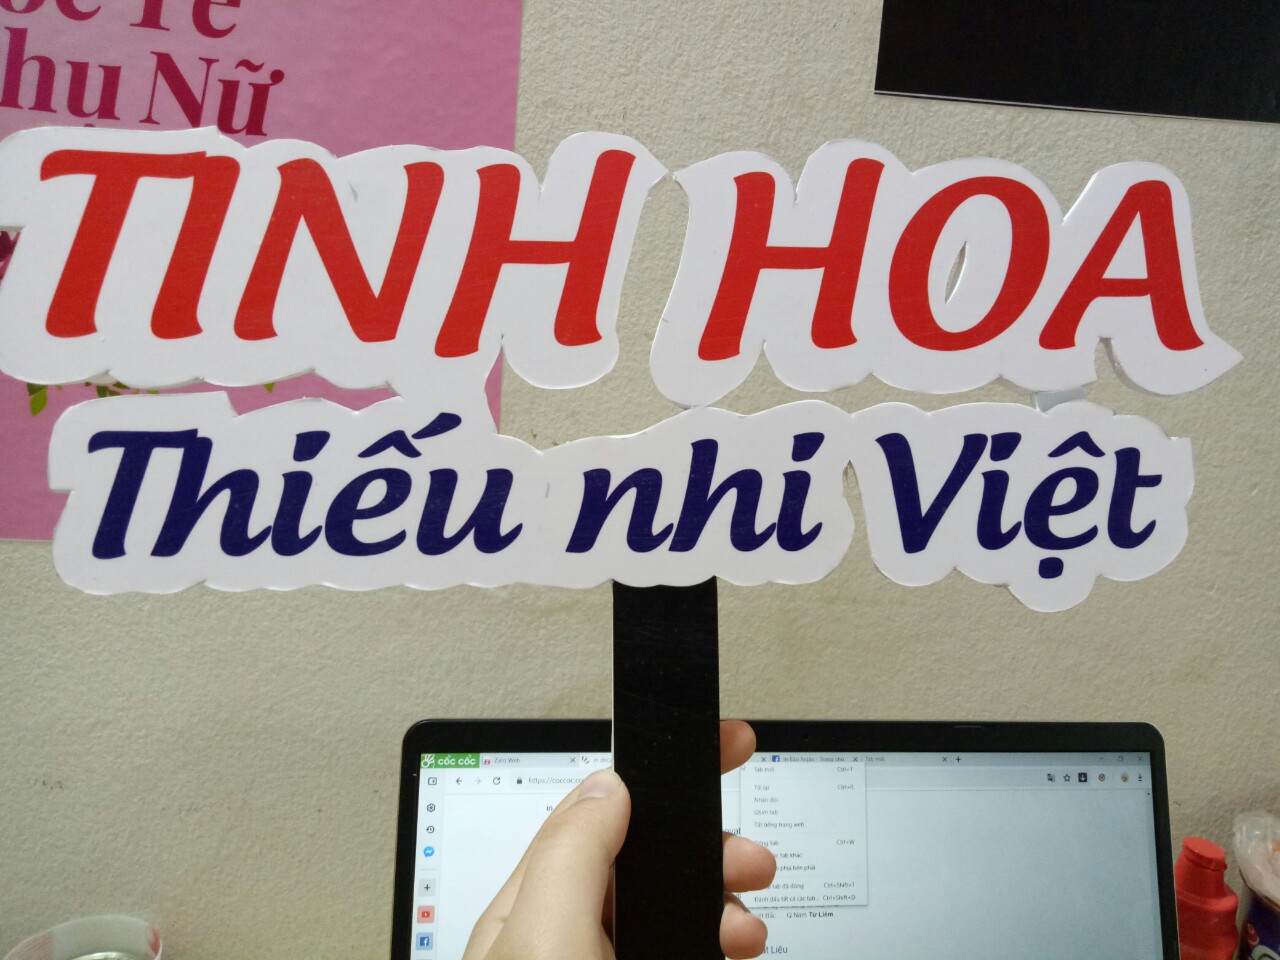 In decal bồi formex tại Nam Từ Liêm, Mễ Trì, Phạm Hùng, Hà Nội